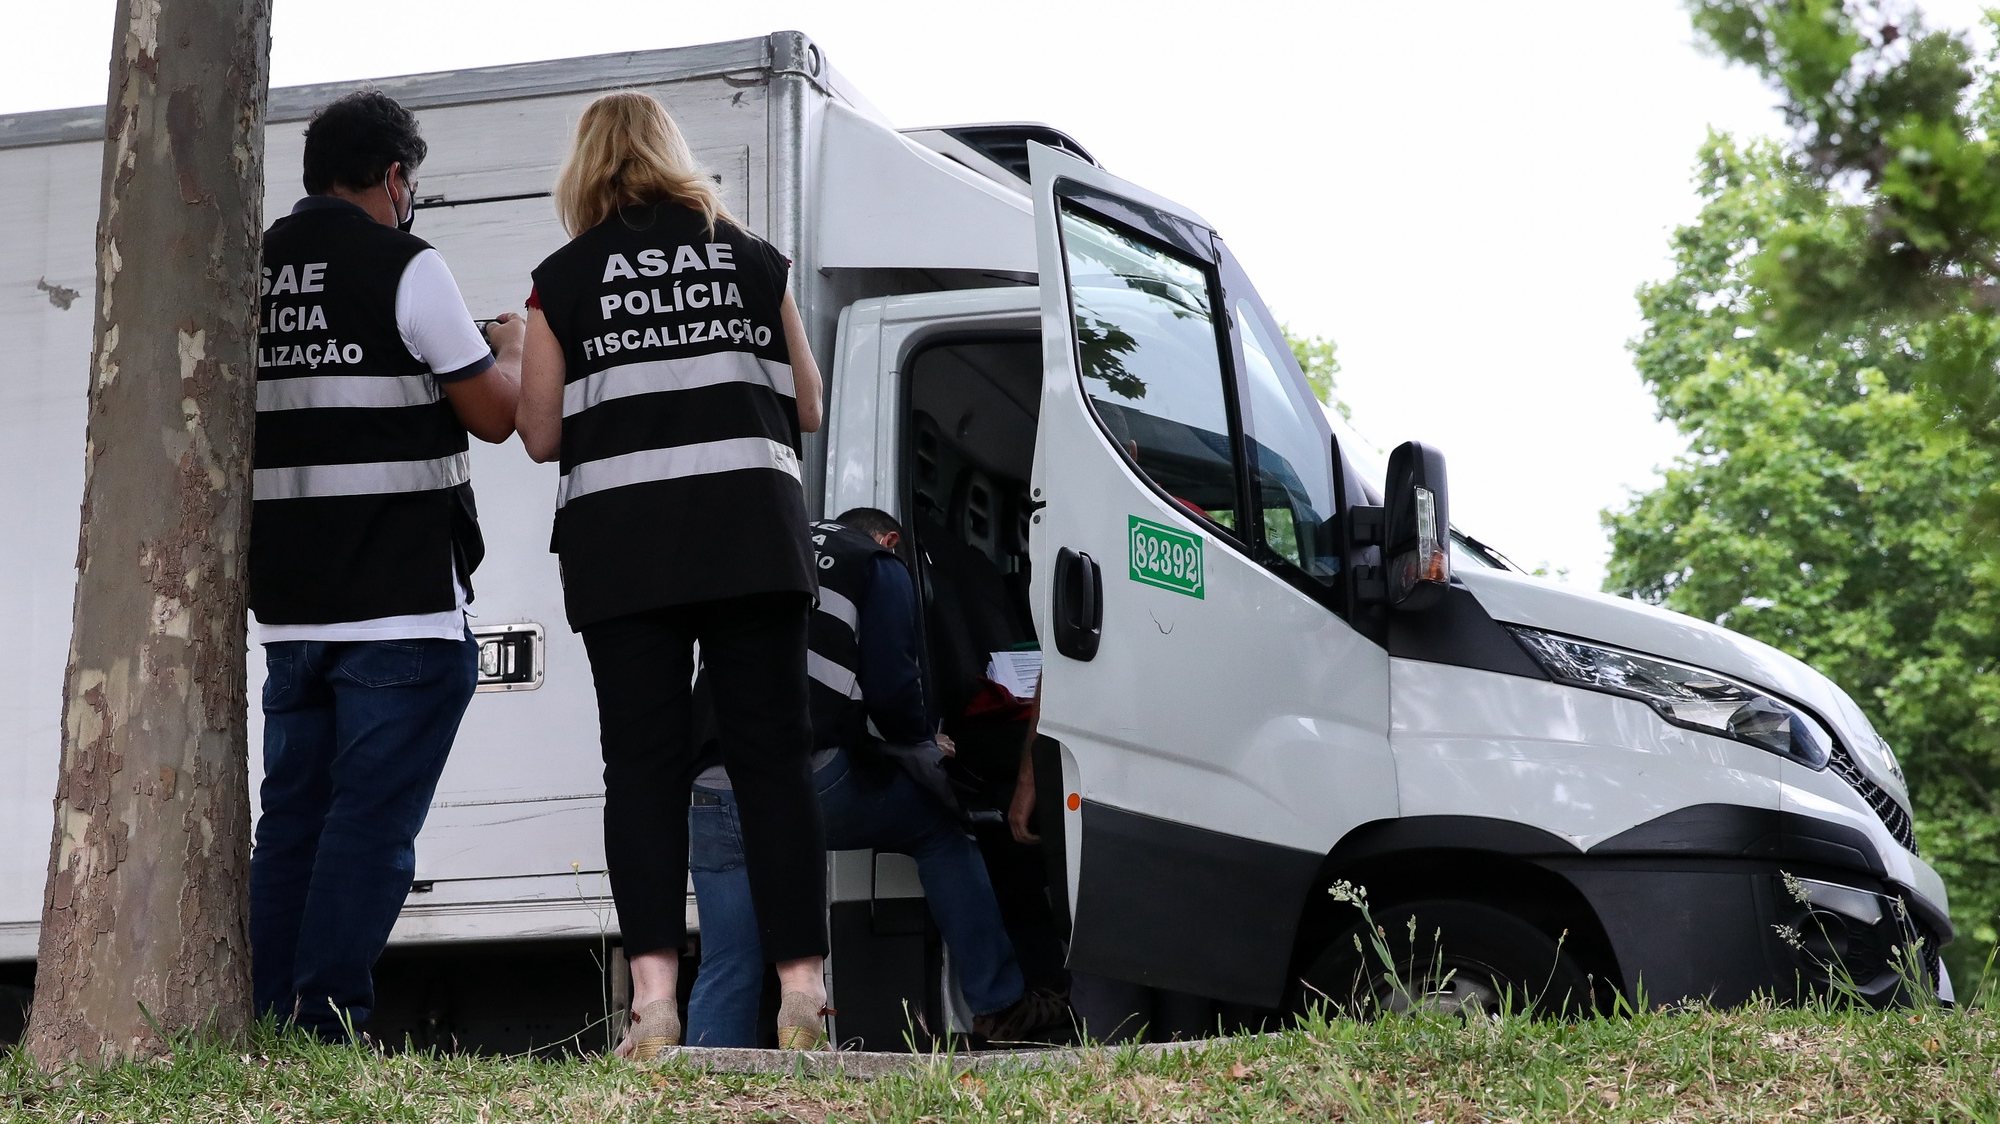 Elementos da Autoridade de Segurança Alimentar e Económica (ASAE) durante uma operação nacional de fiscalização de transporte de mercadorias, em Coimbra, 17 de junho de 2021. PAULO NOVAIS/LUSA